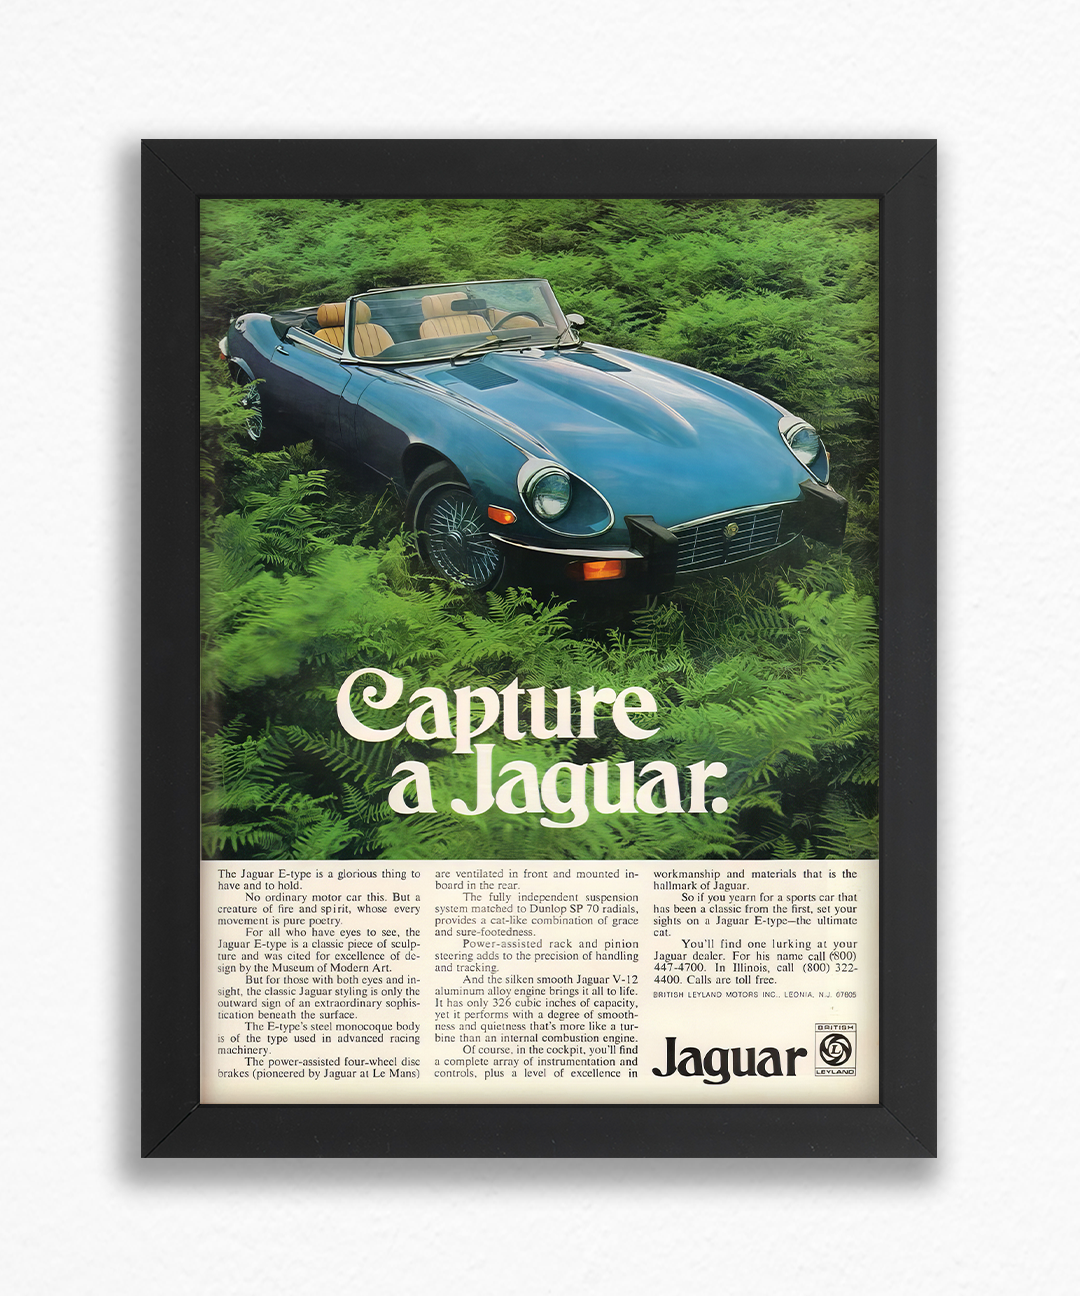 Capture a jaguar